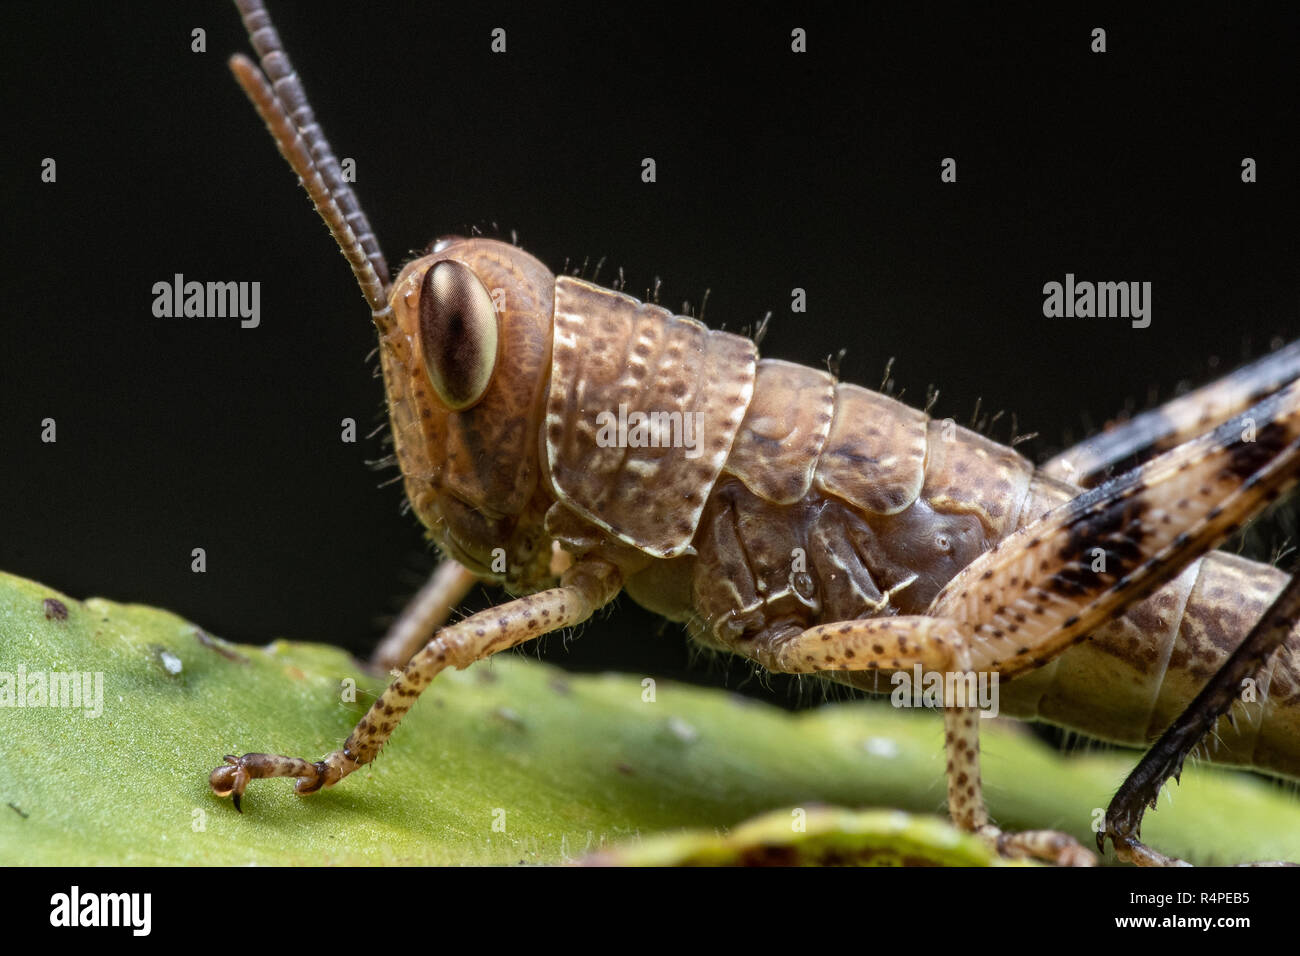 Close up portrait of a juvenile grasshopper Stock Photo